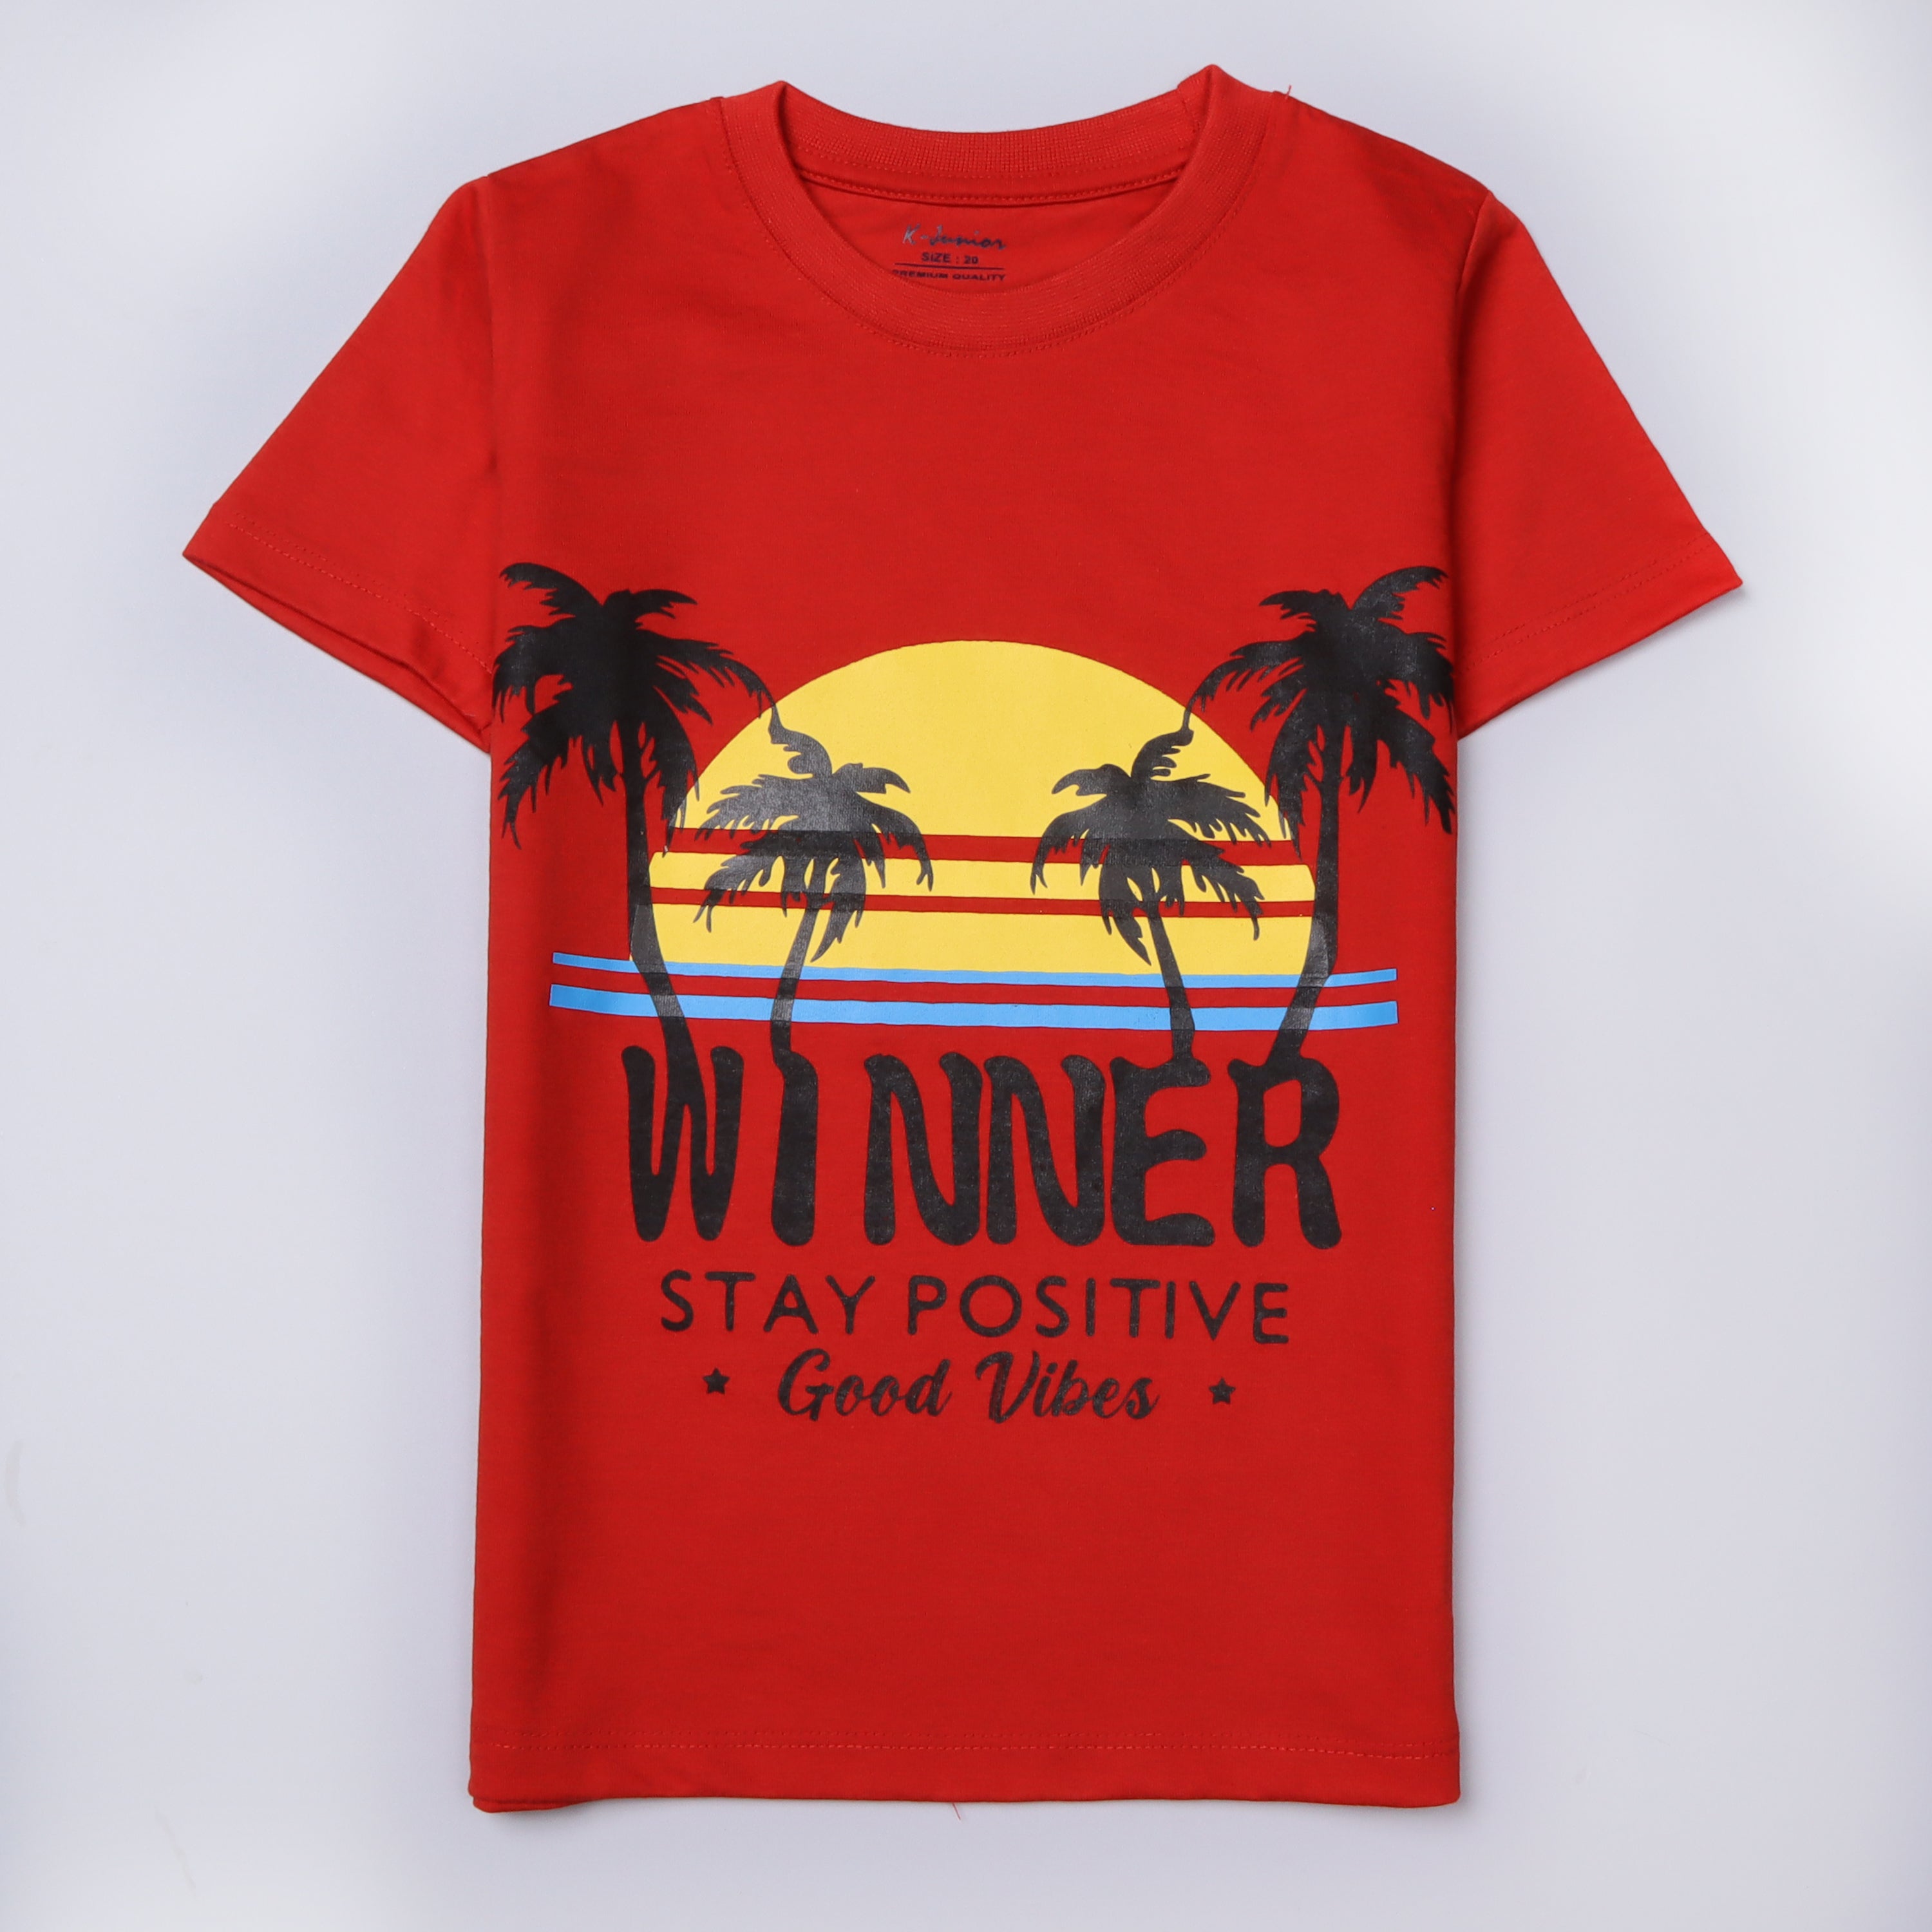 Boys Half Sleeves-Printed T-Shirt (Winner)